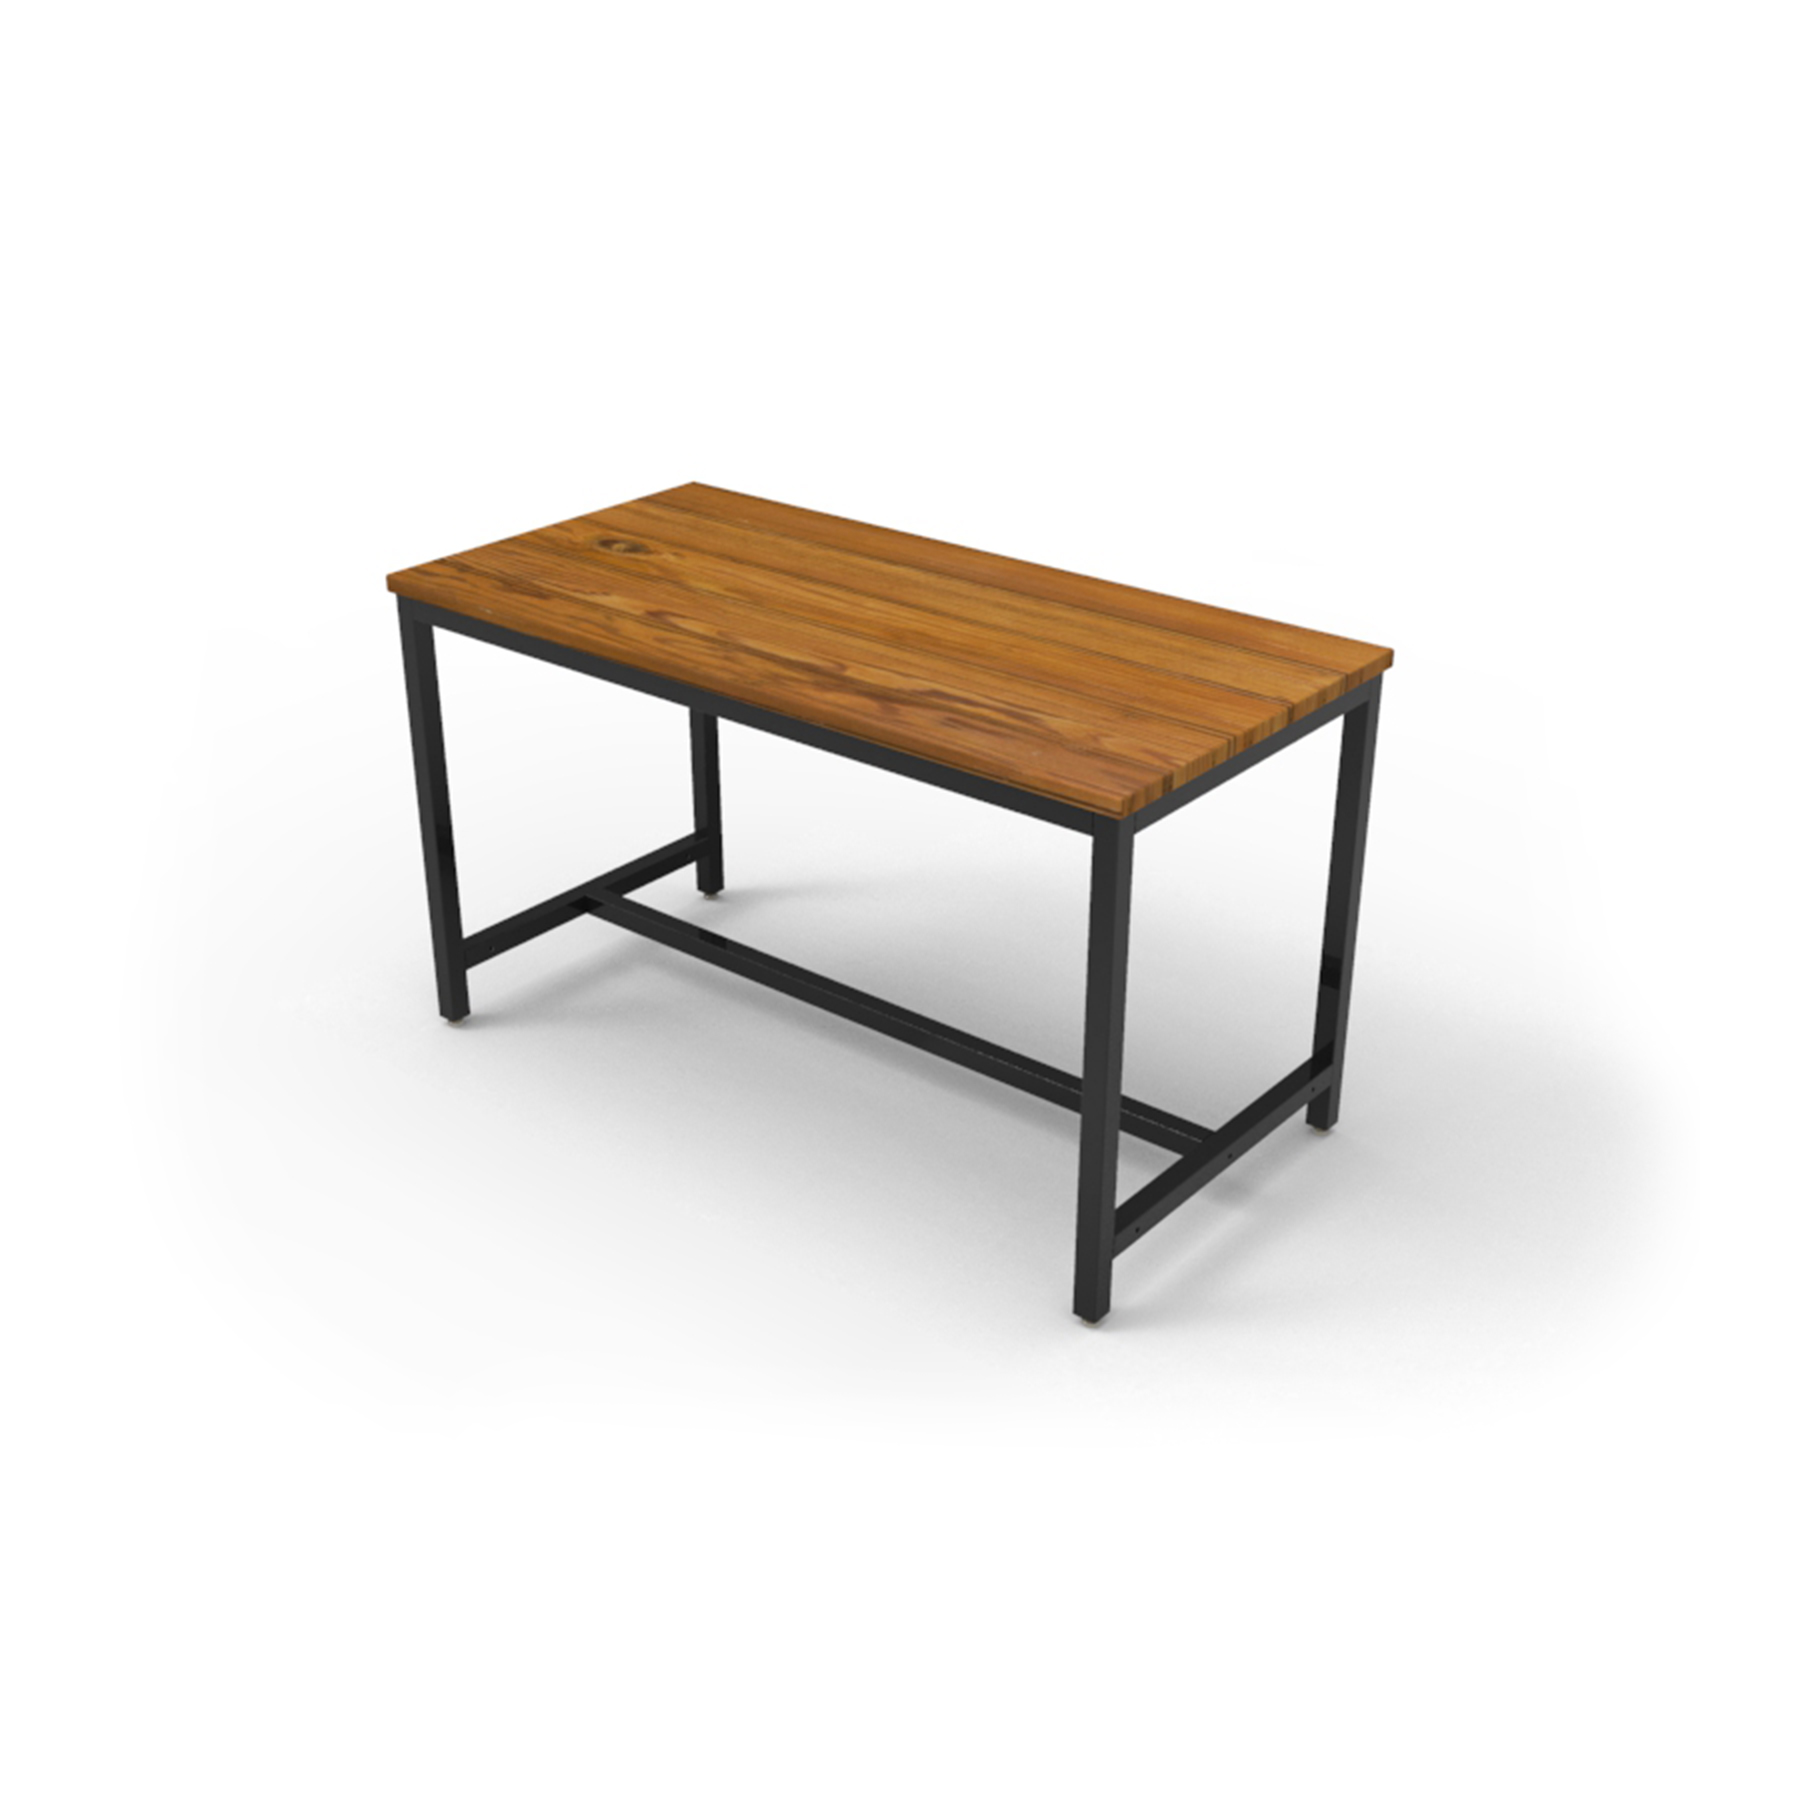 darkwood top steel legs durable desk black legs on desk